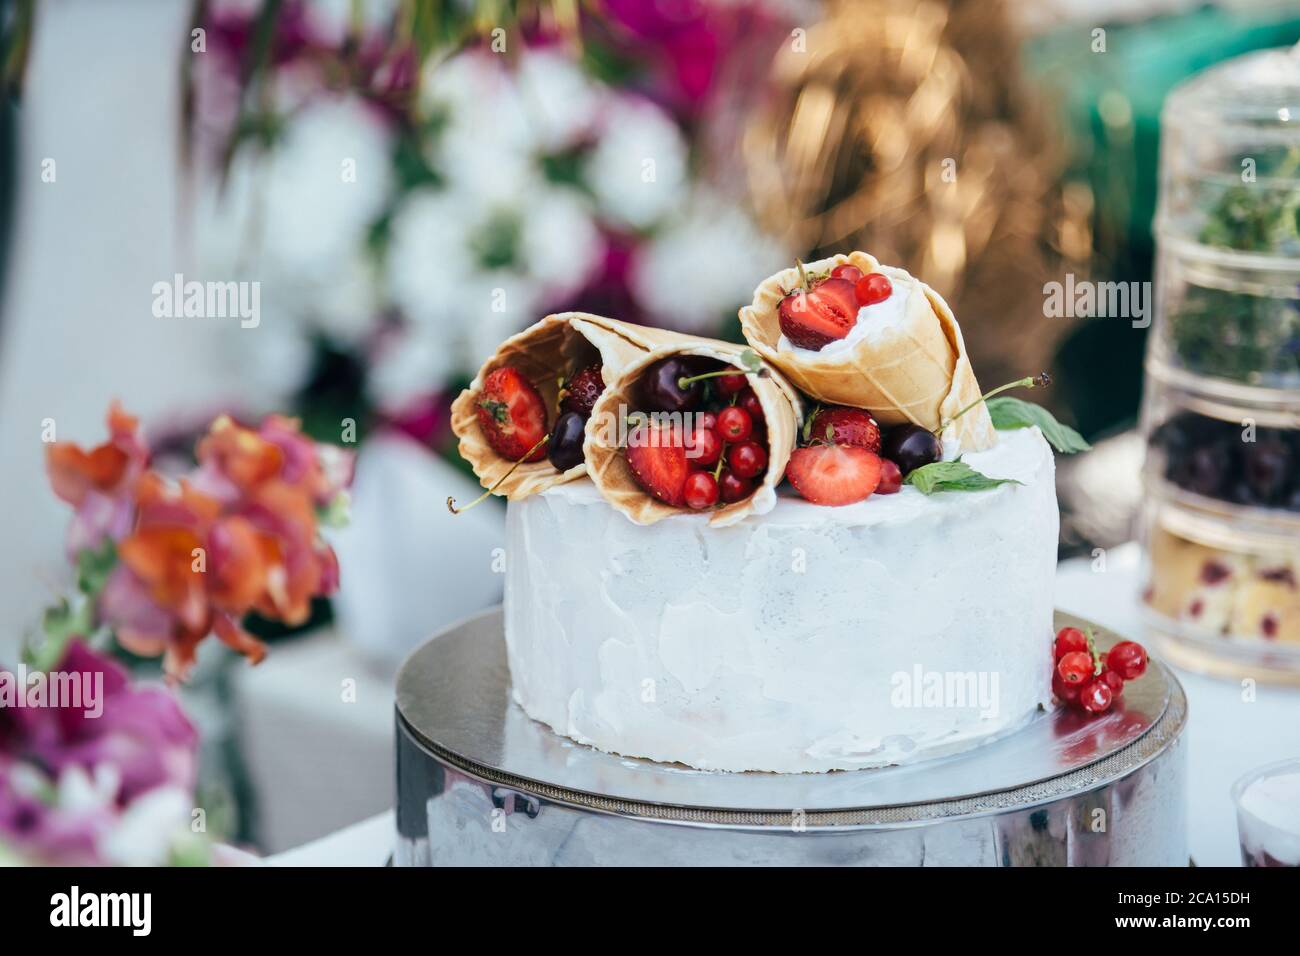 Köstliche weiße cremige Torte mit Waffelkegel gefüllt mit verschiedenen Beeren darauf, umgeben von Blumenschmuck Stockfoto